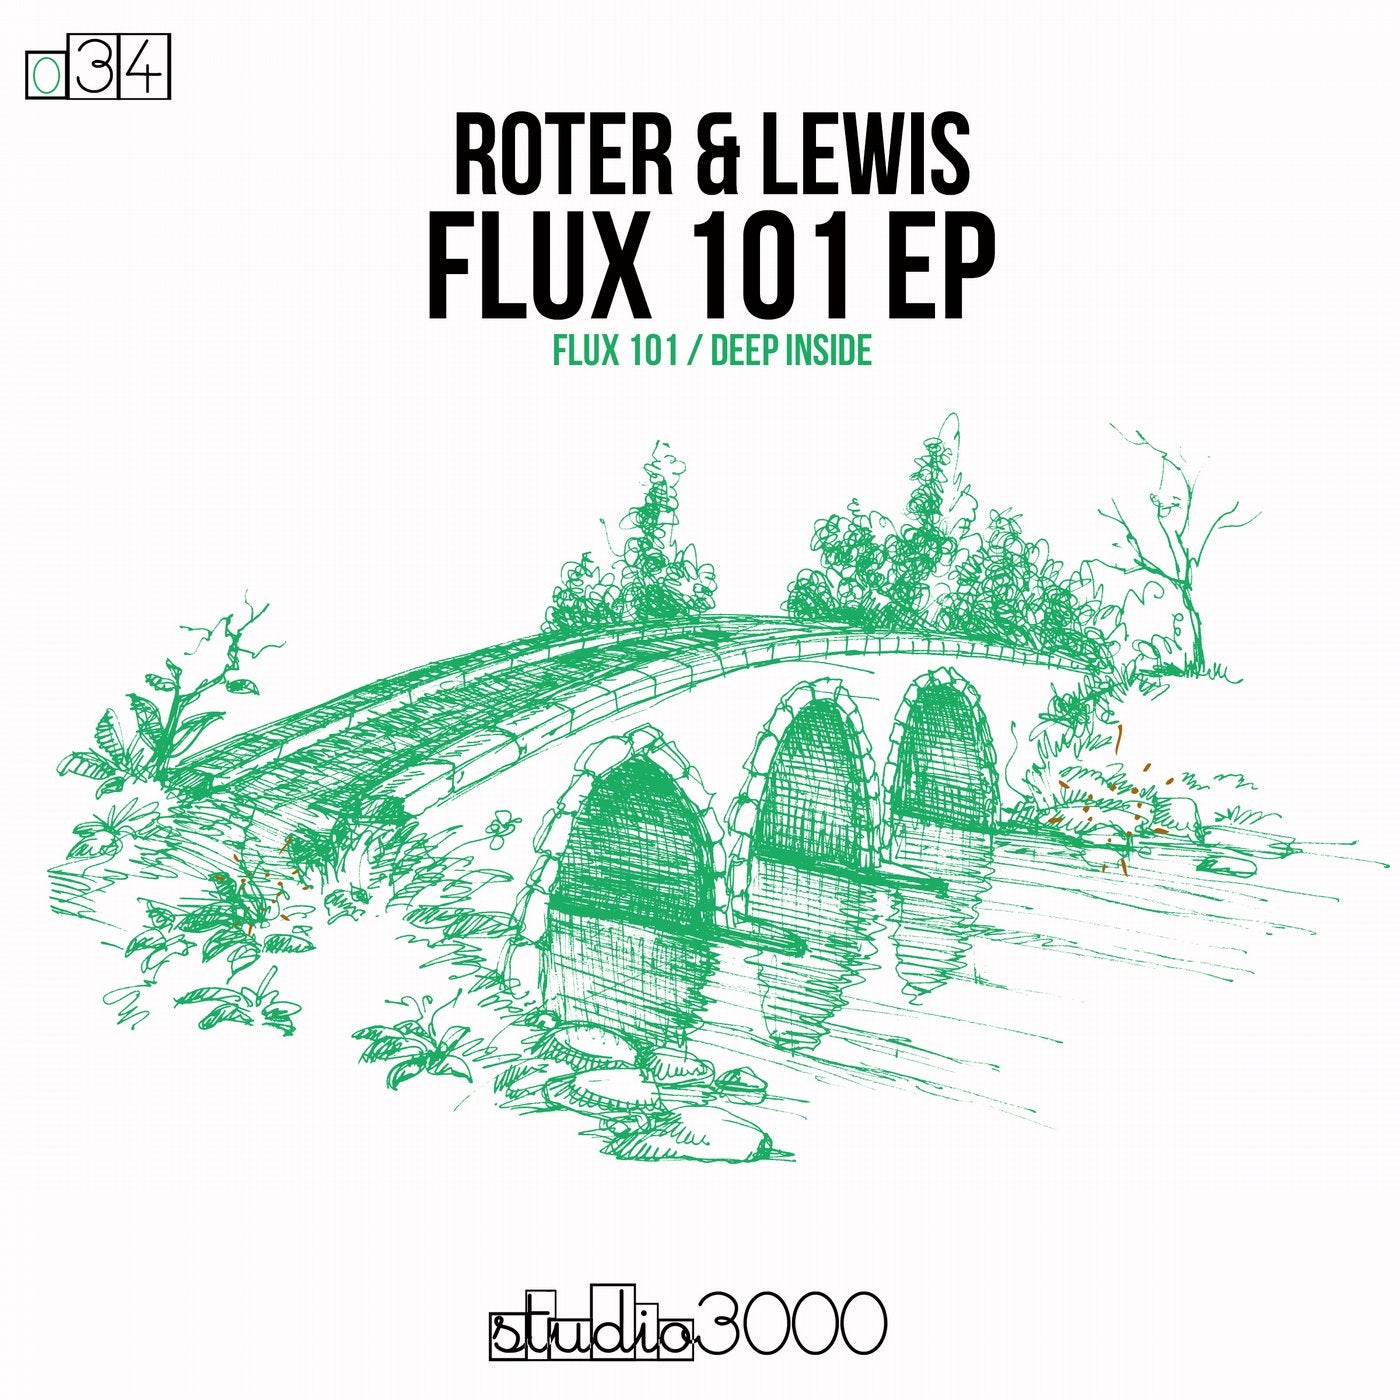 Flux 101 EP